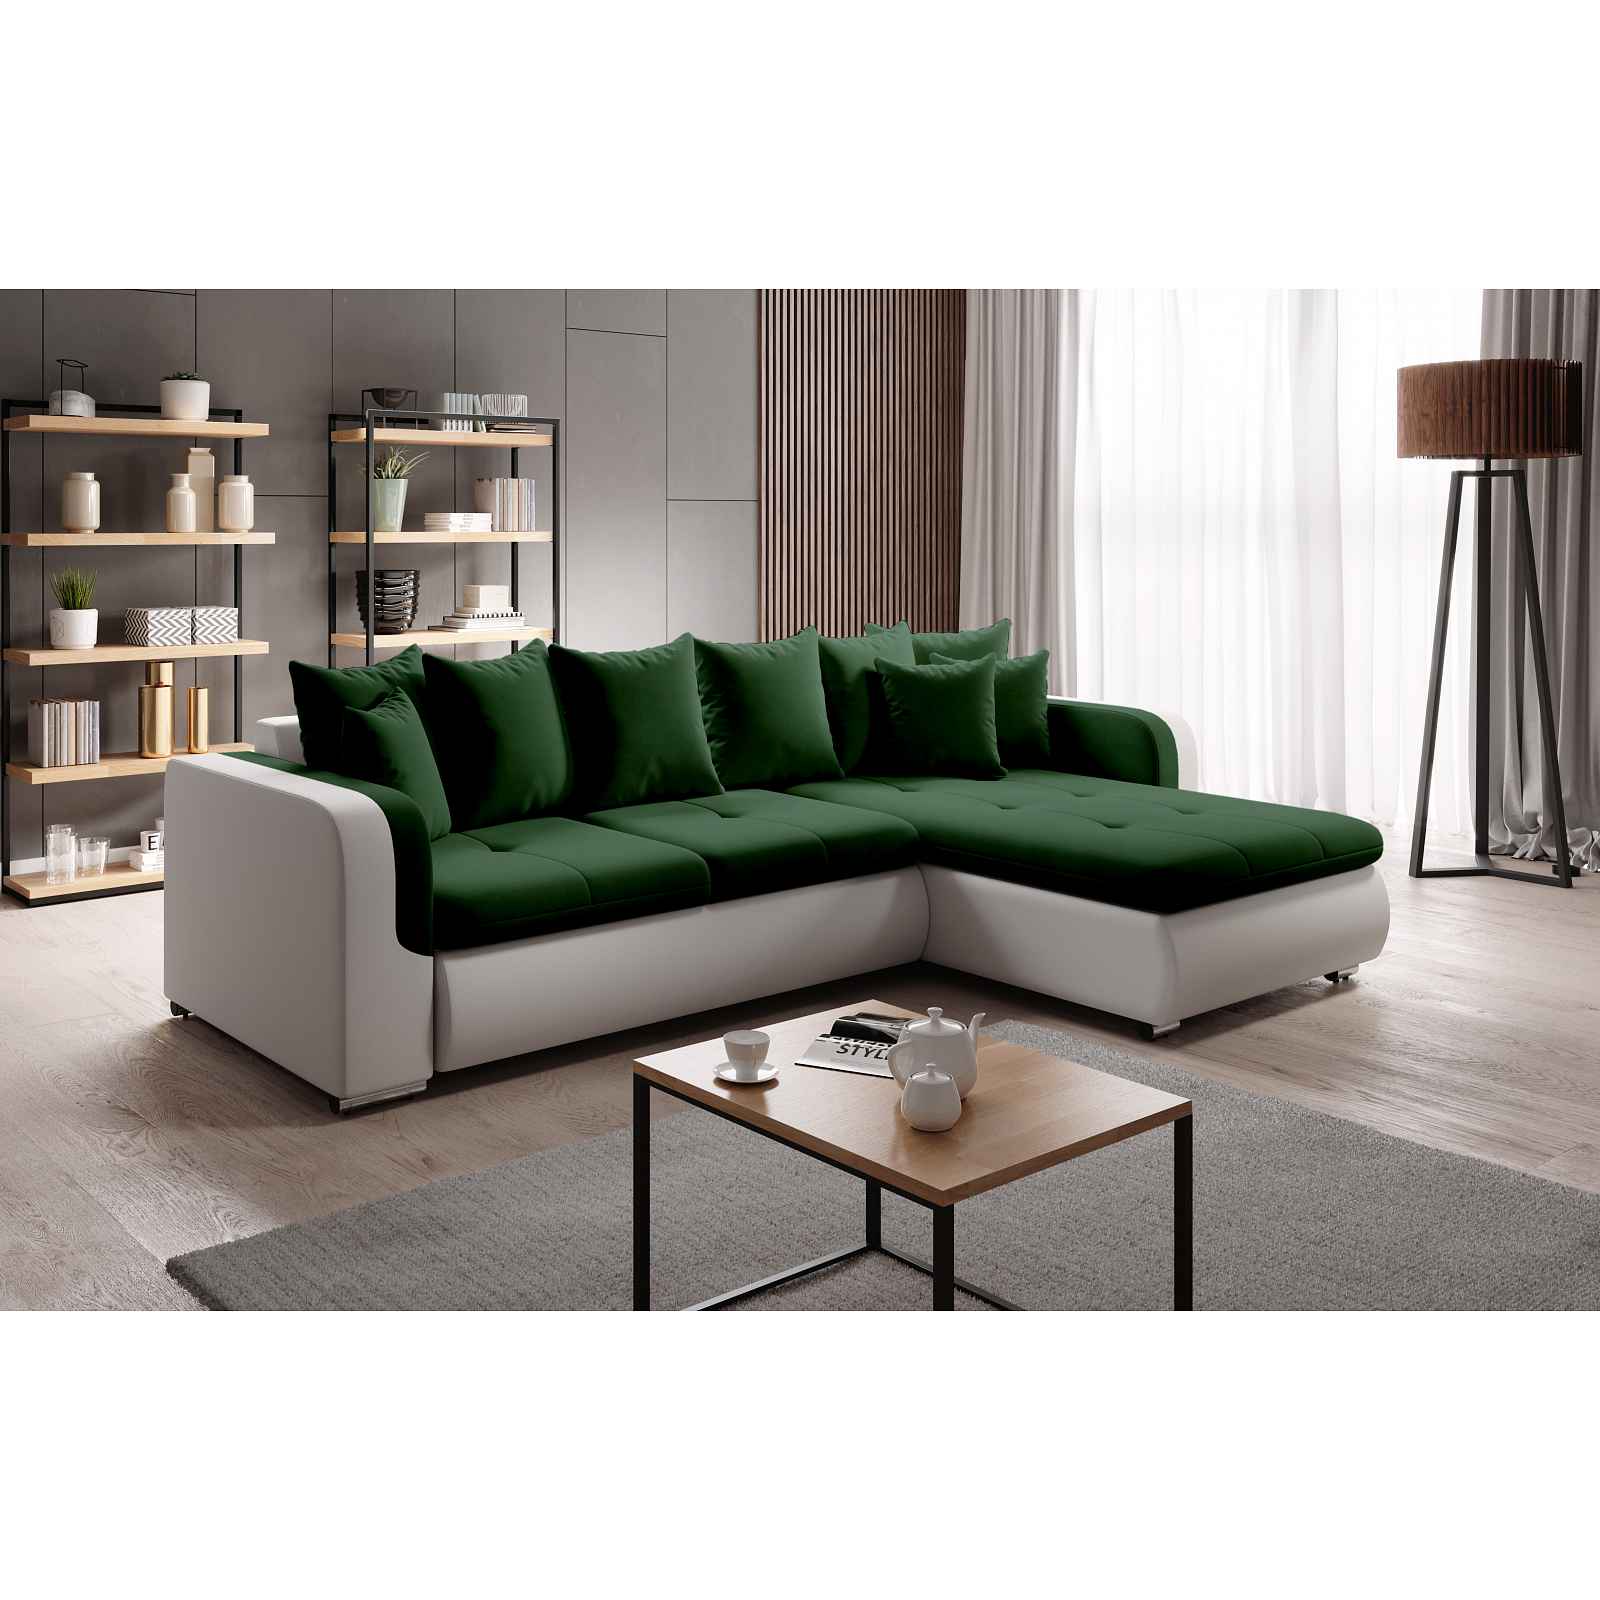 Moderní sedačka Ferino, bílá/zelená Milo